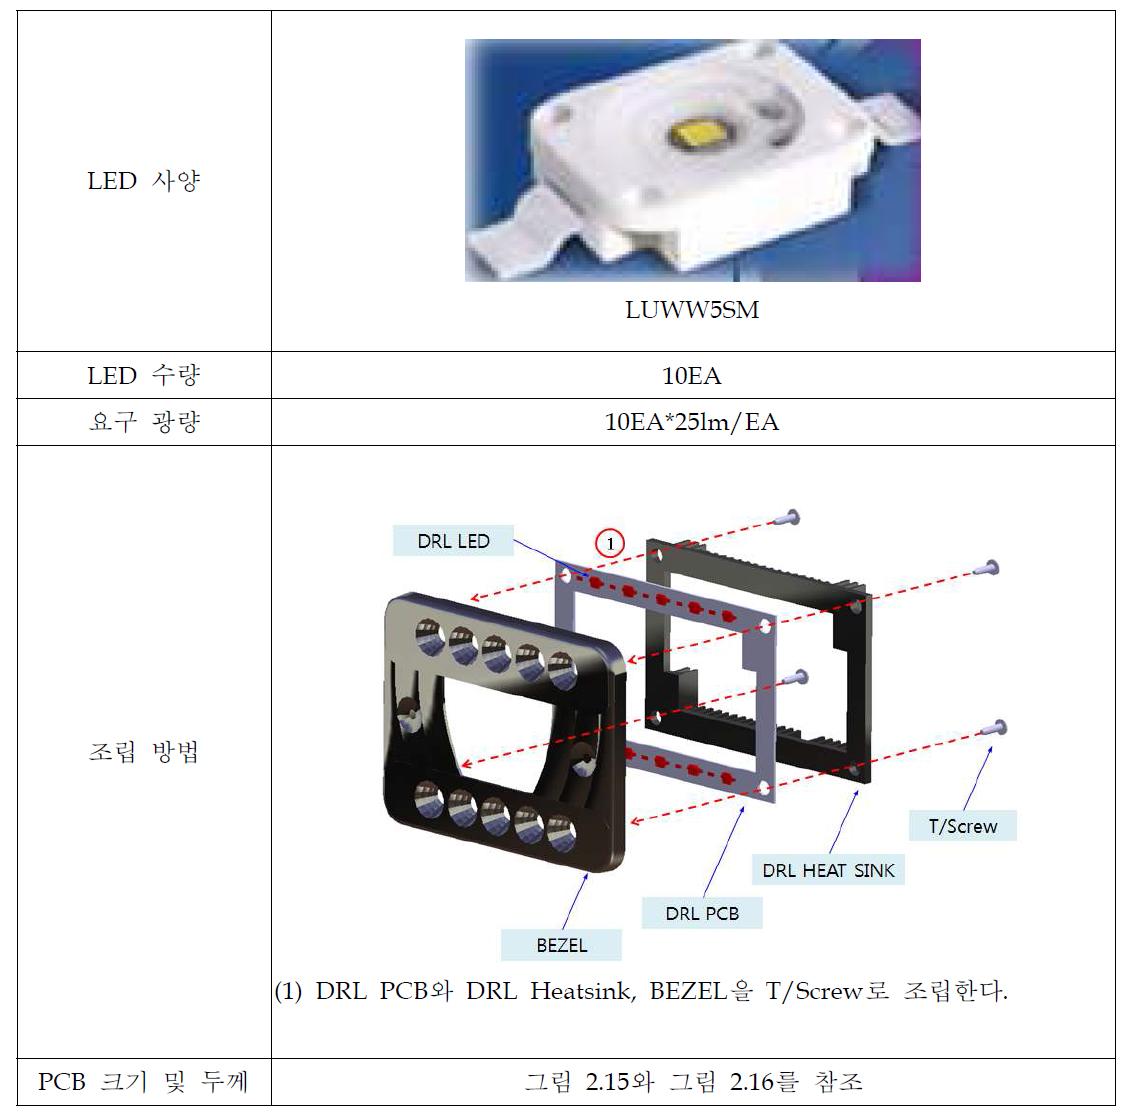 LED DRL PCB Input 정보